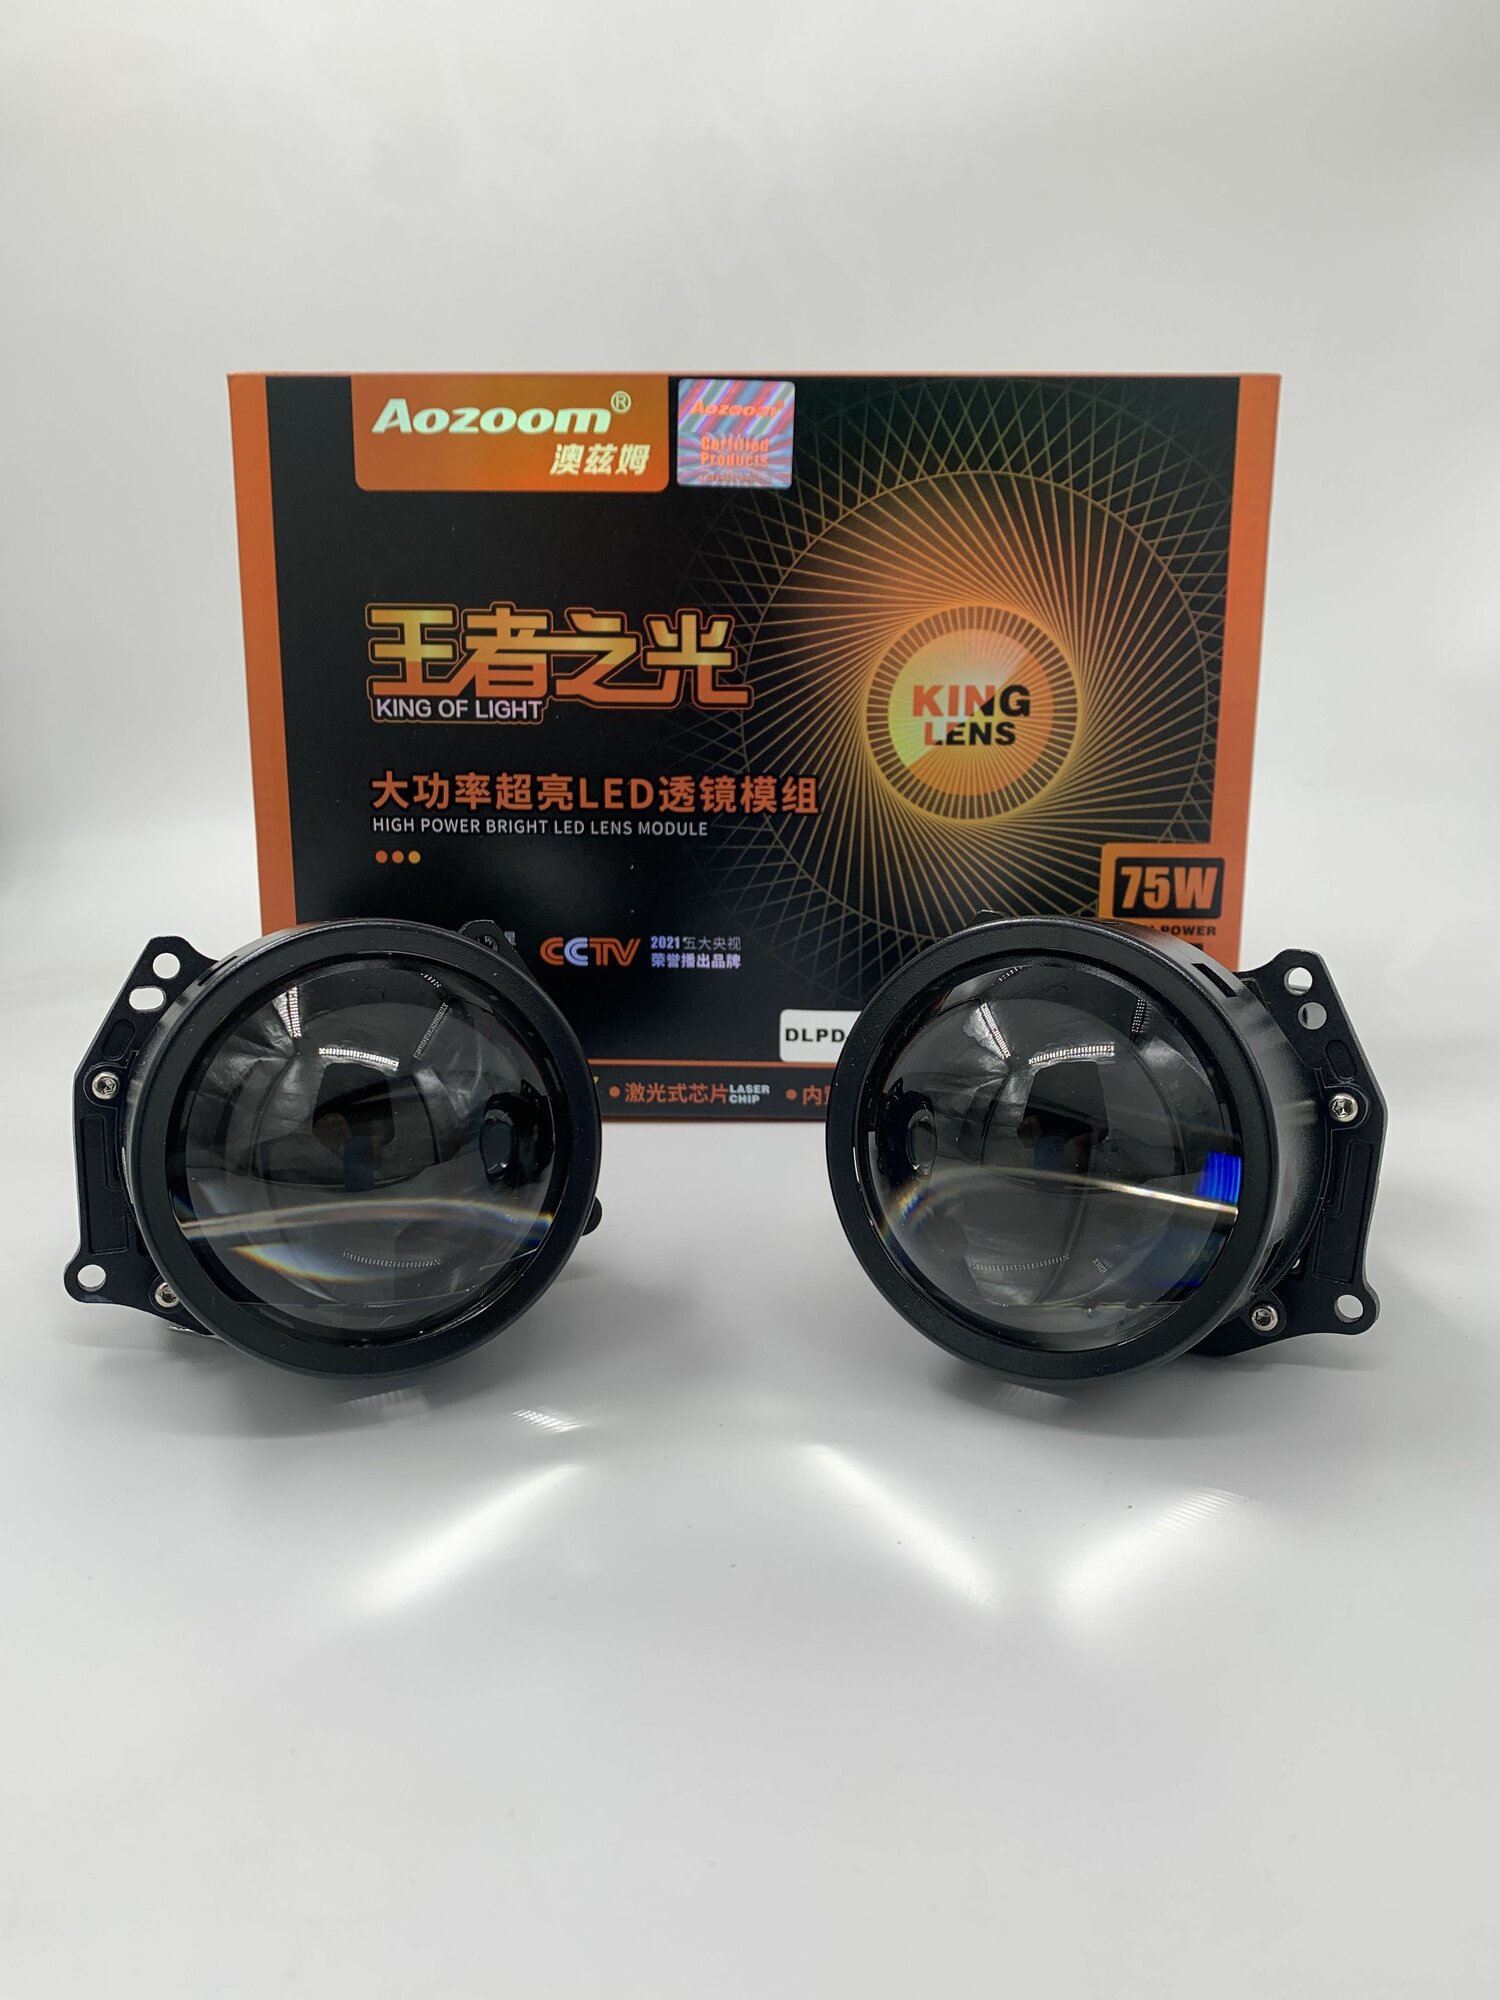 Светодиодные модули дальнего/ближнего света Aozoom L1 King of Light Lens 3.0" 75W 5500K 12V